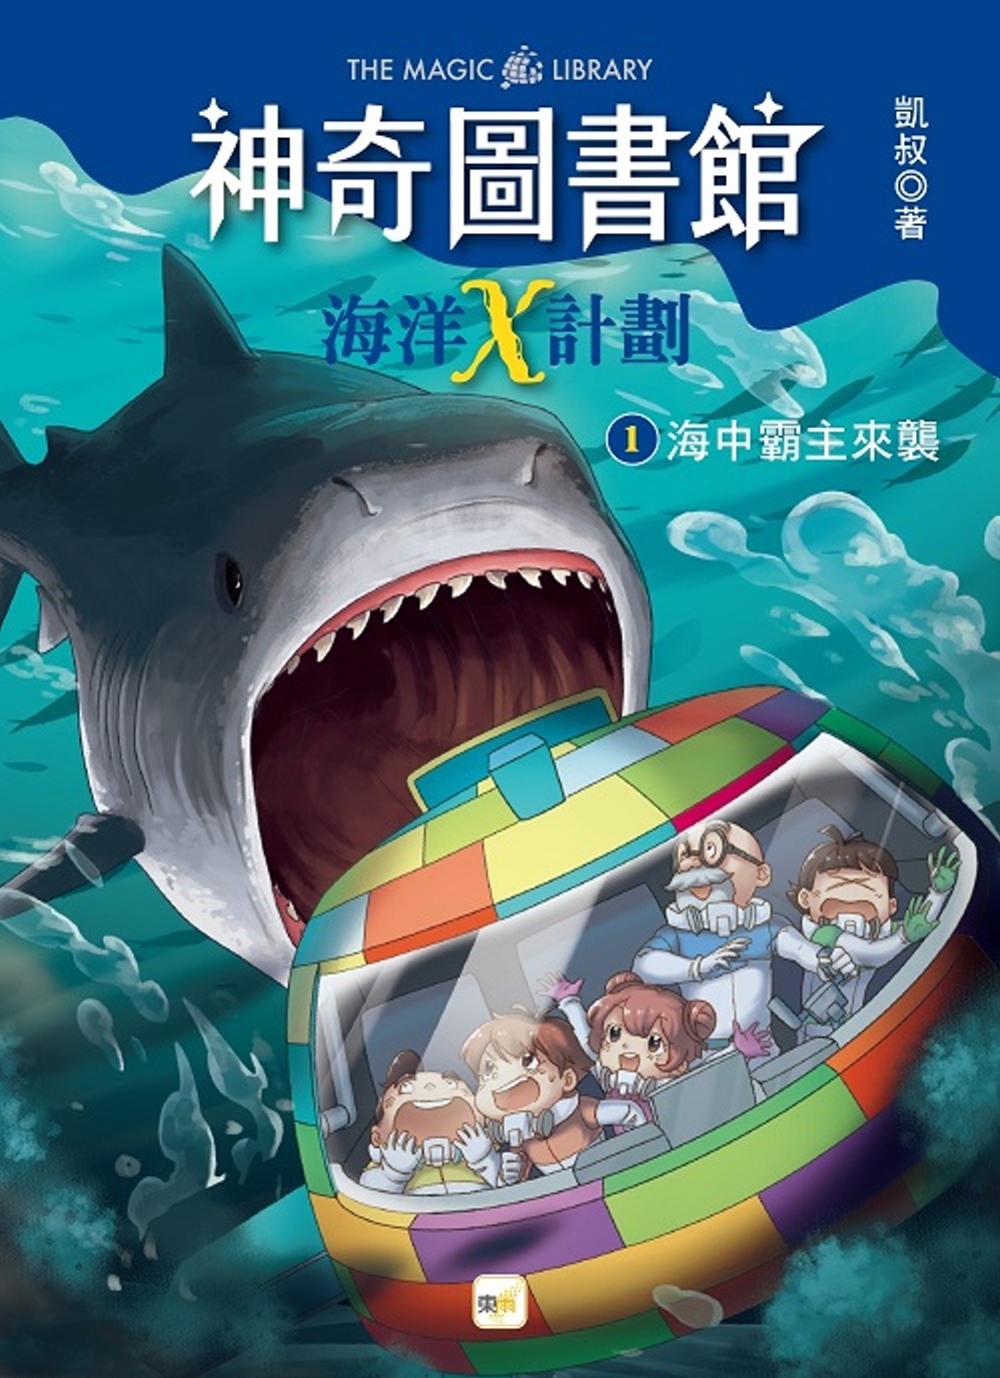 【神奇圖書館】海洋X計劃(1)：海中霸主來襲 （中高年級知識讀本）(限台灣)